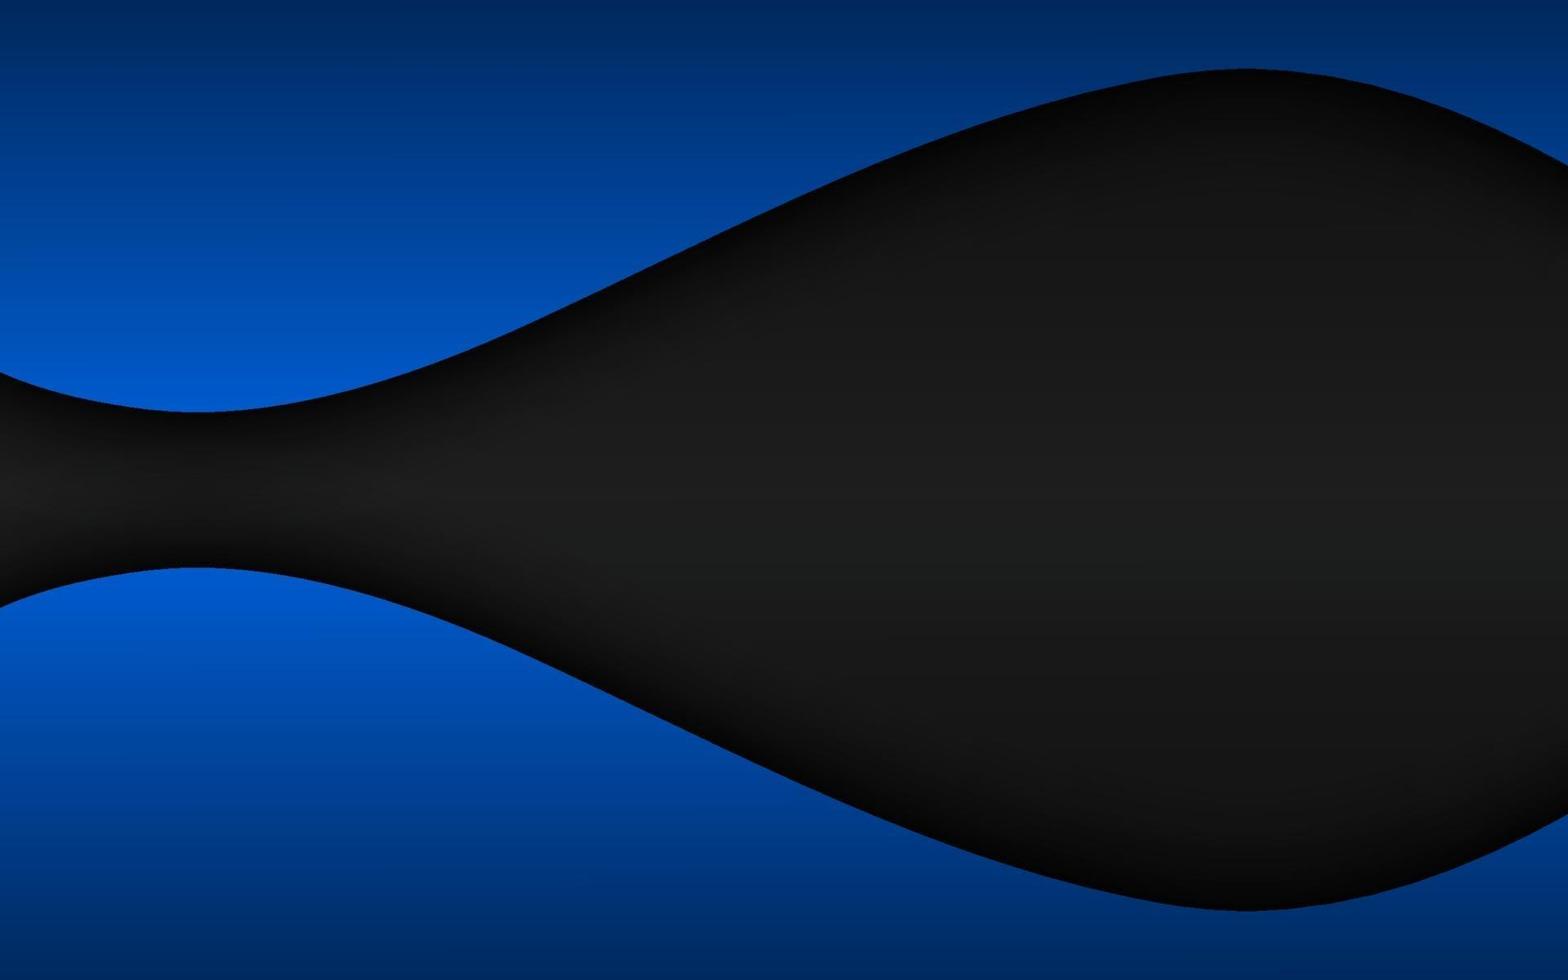 Fondo de vector de onda abstracto negro y azul con espacio en blanco para el texto. Ilustración de vector de diseño corporativo moderno